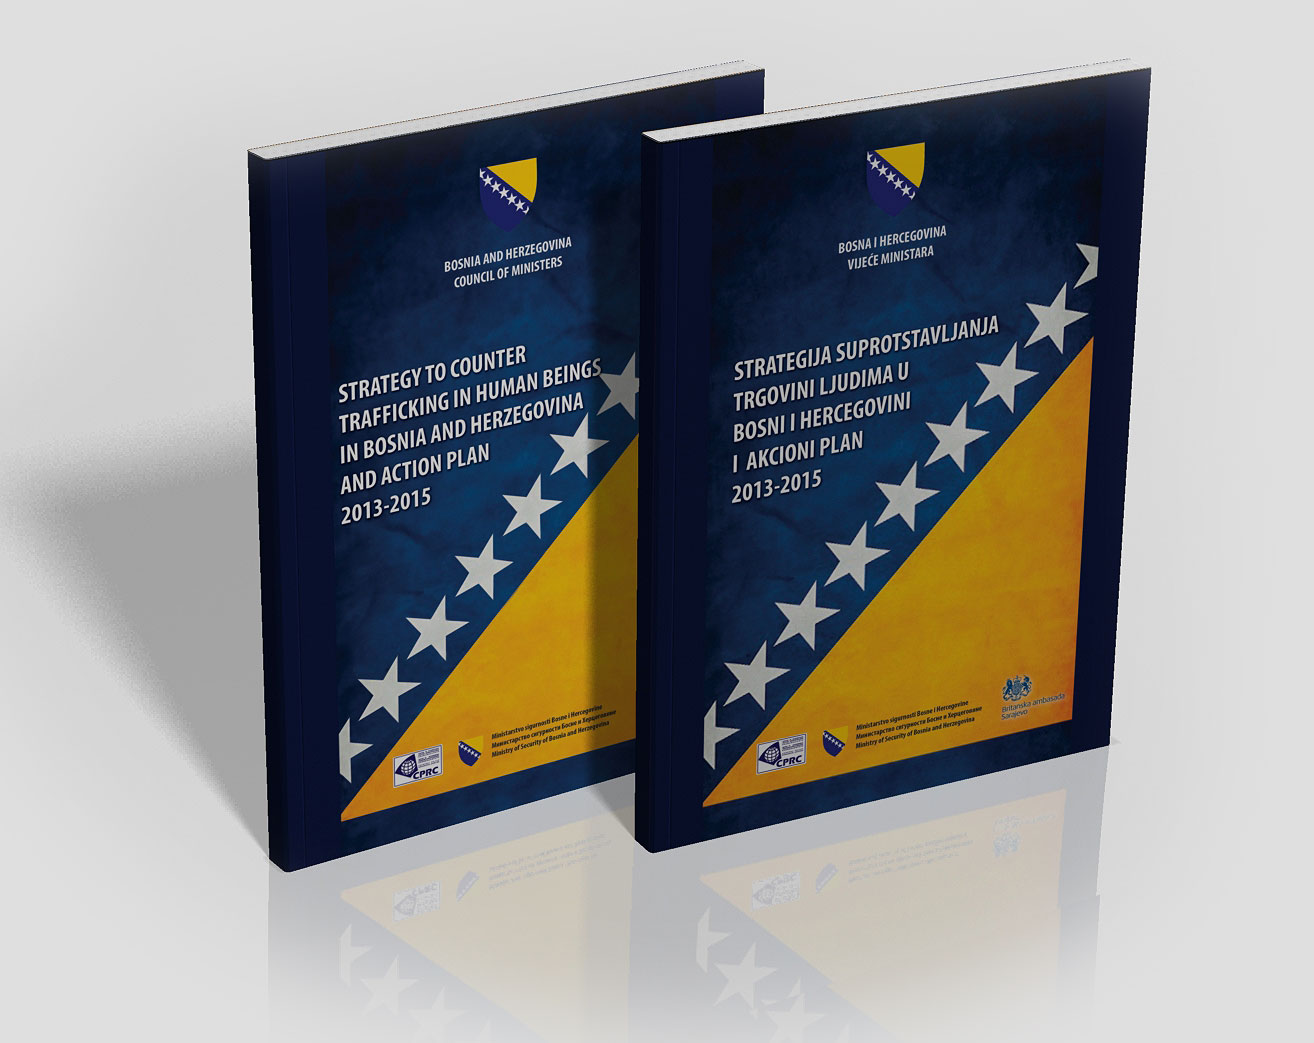 Dizajn, štampa i prelom knjige - brošure Strategija suprotstavljanja trgovini ljudima u Bosni i Hercegovini, Ministarstvo sigurnosti BiH